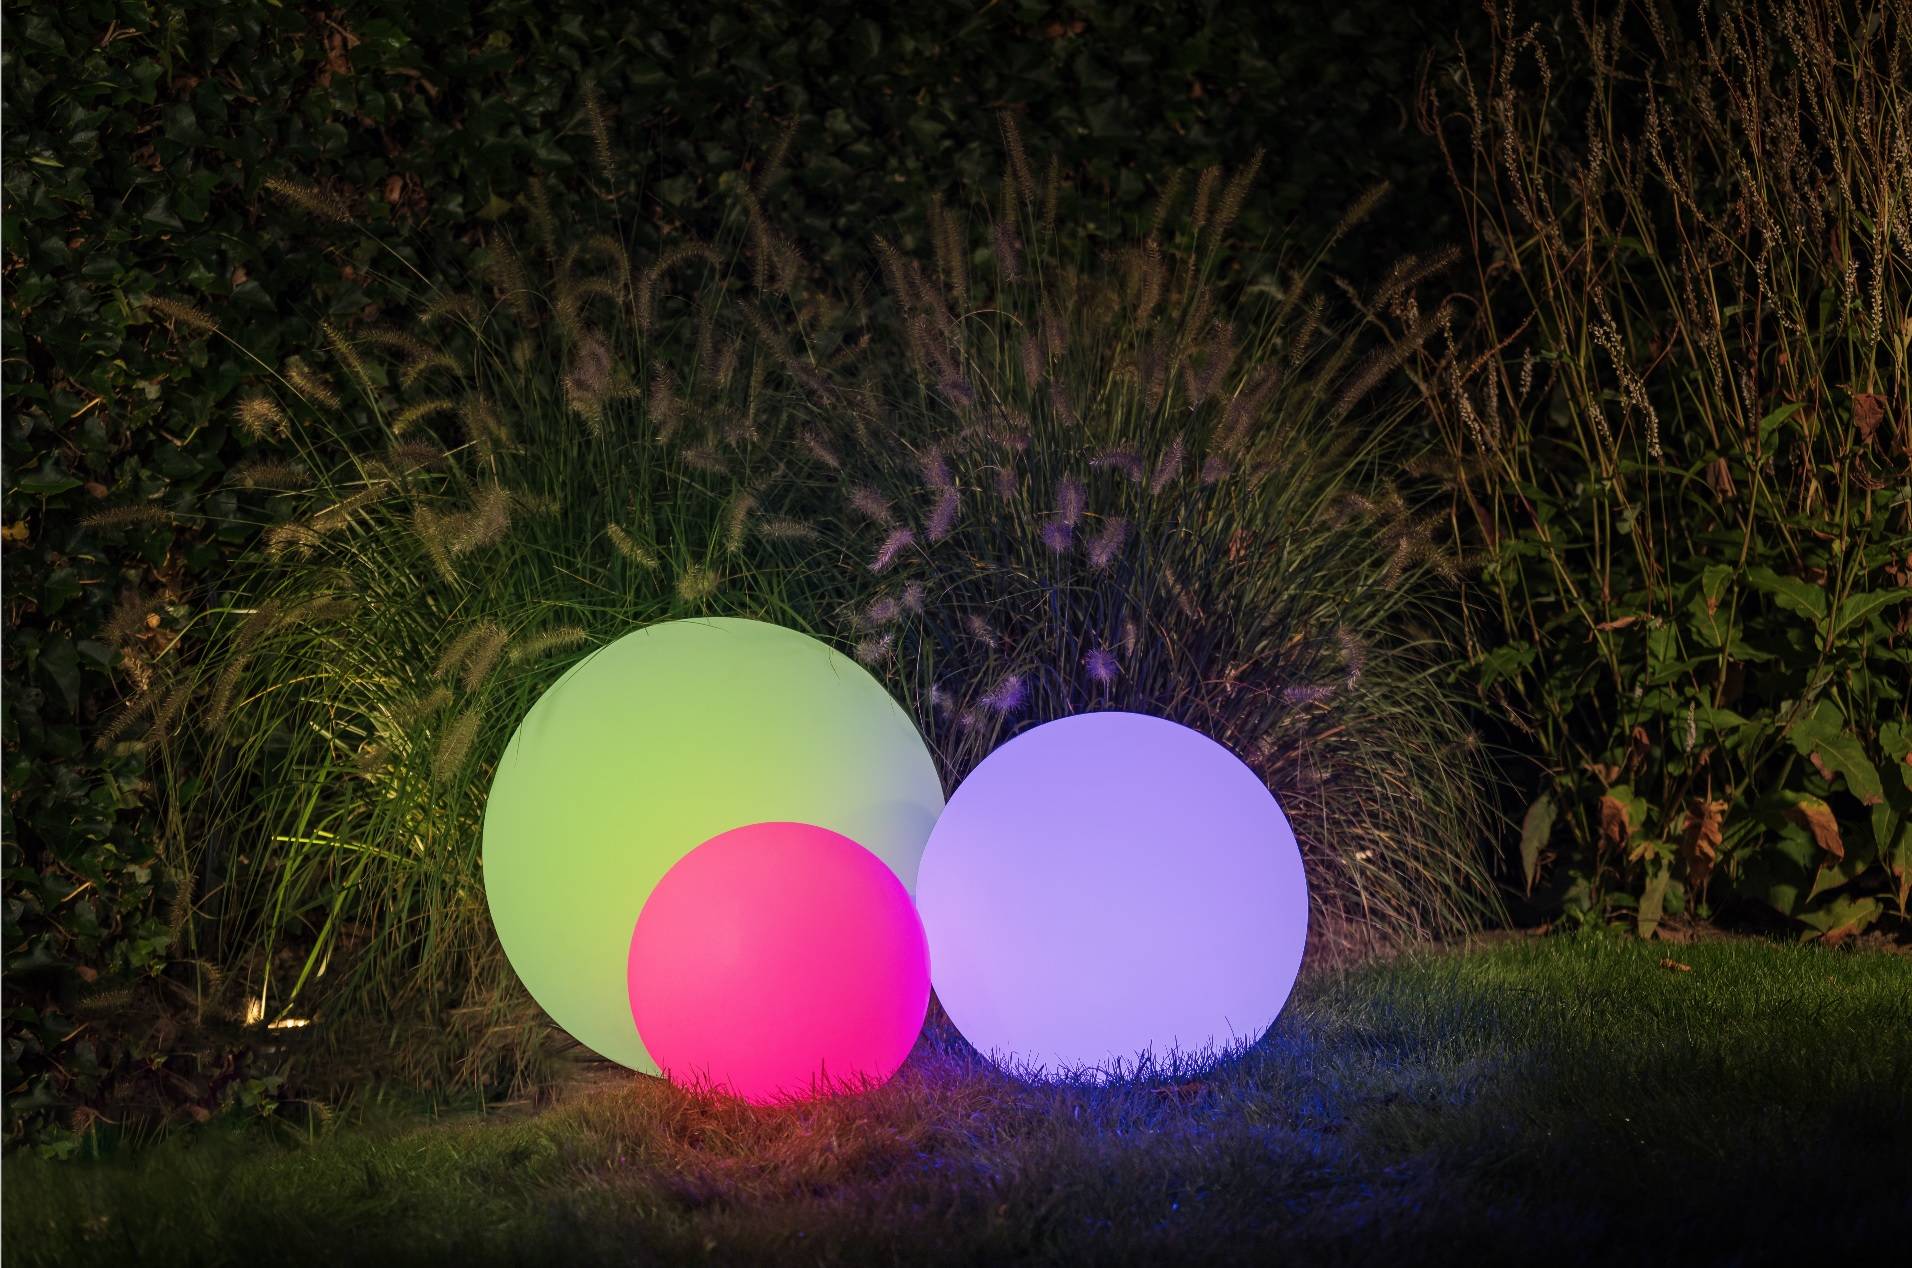 Boule LED 50cm - Sphère Décorative Lumineuse. 16 Couleurs. Ø 50 Cm -  Eclairage extérieur et accessoire BUT